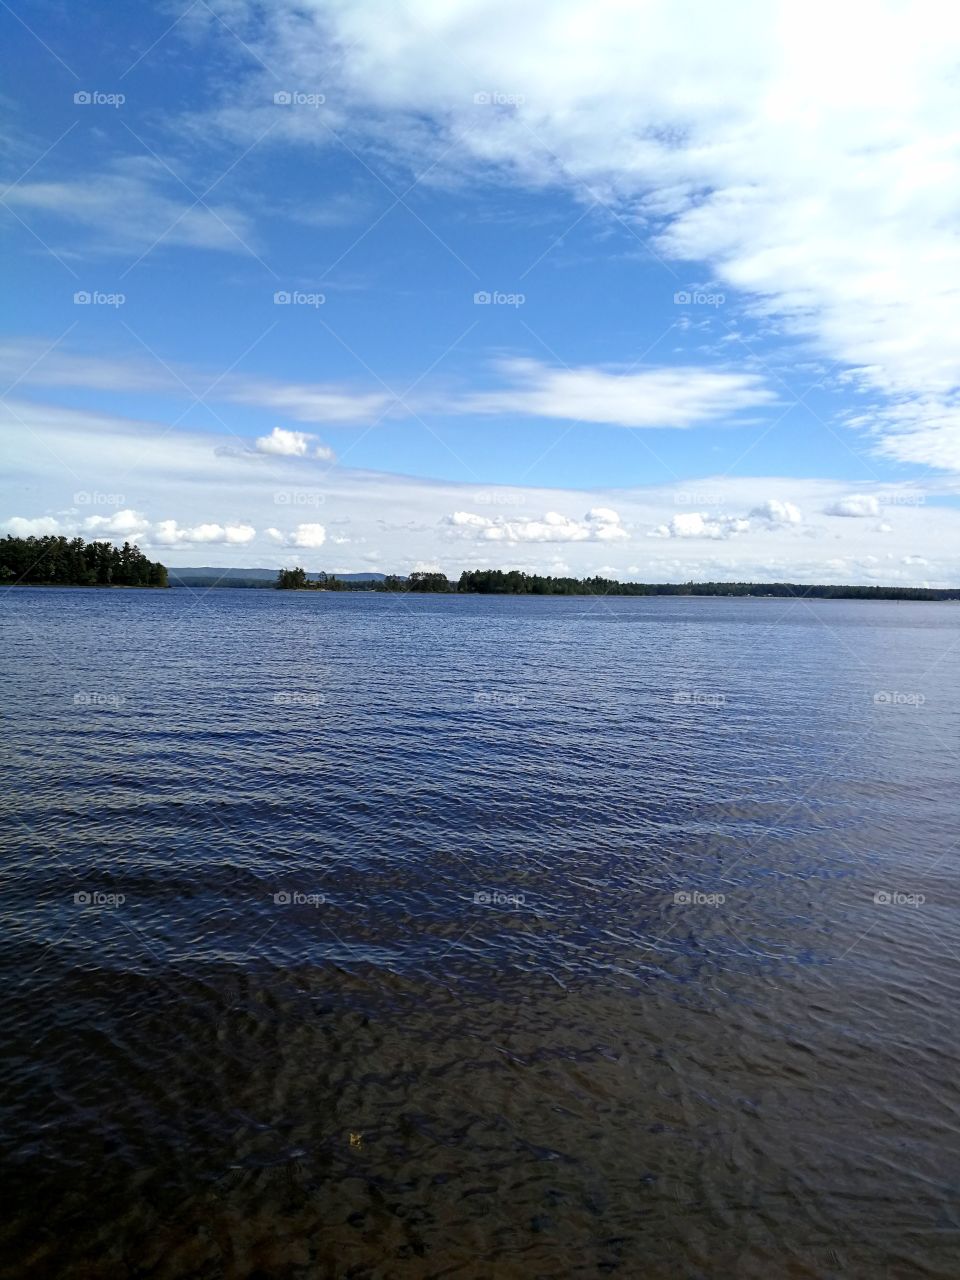 beautiful lake.